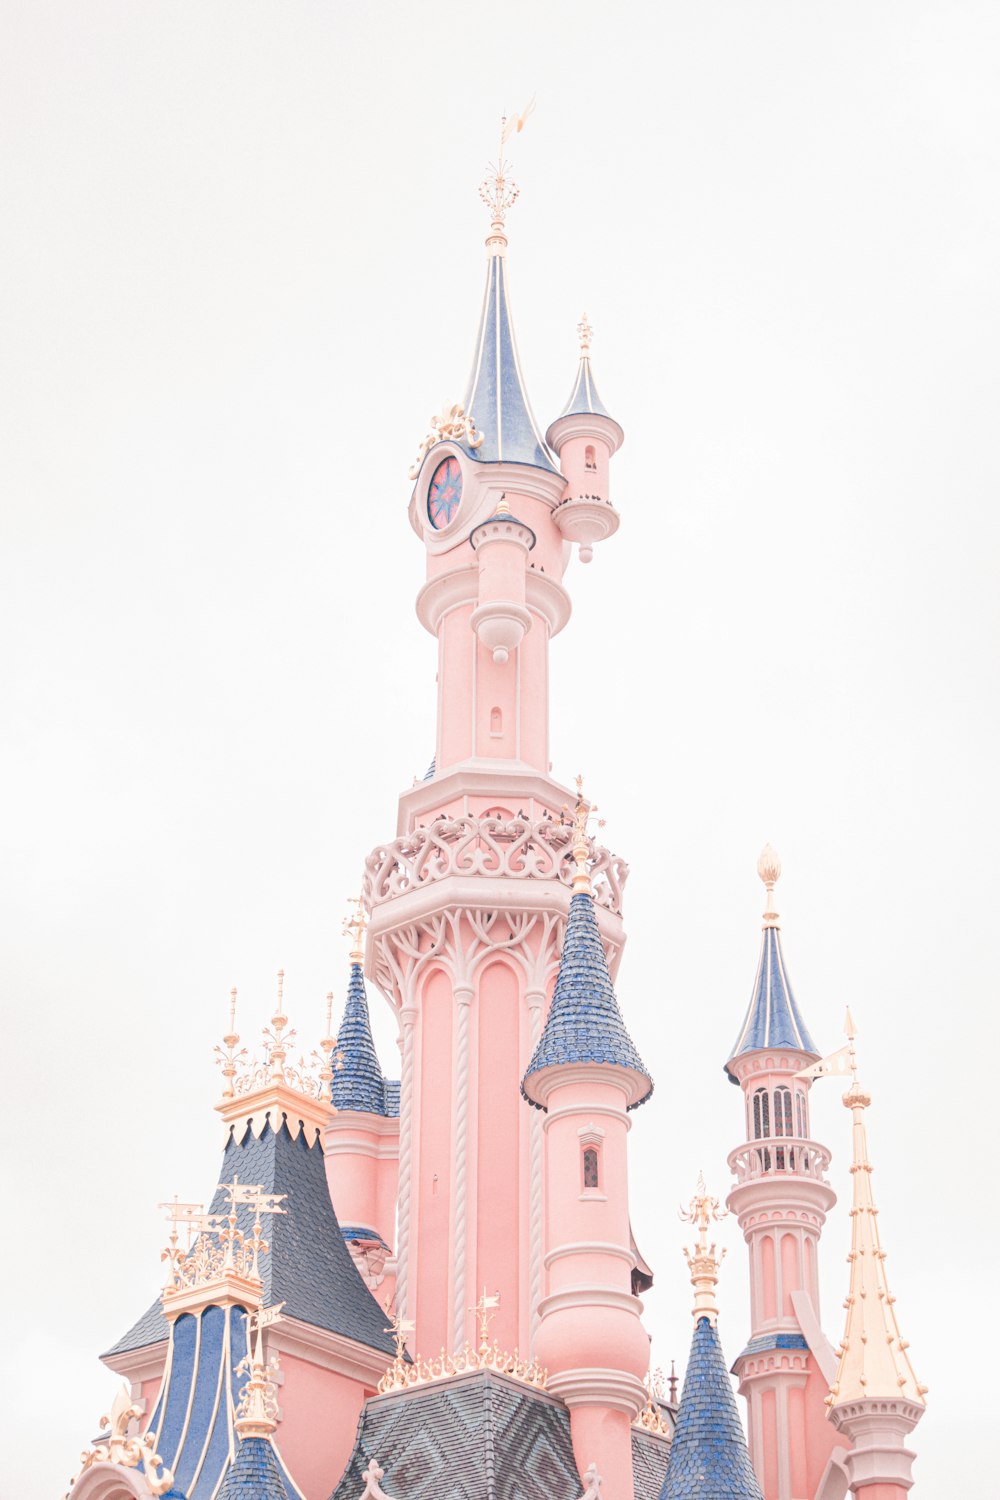 Ein rosa-blaues Schloss mit einer Uhr darauf